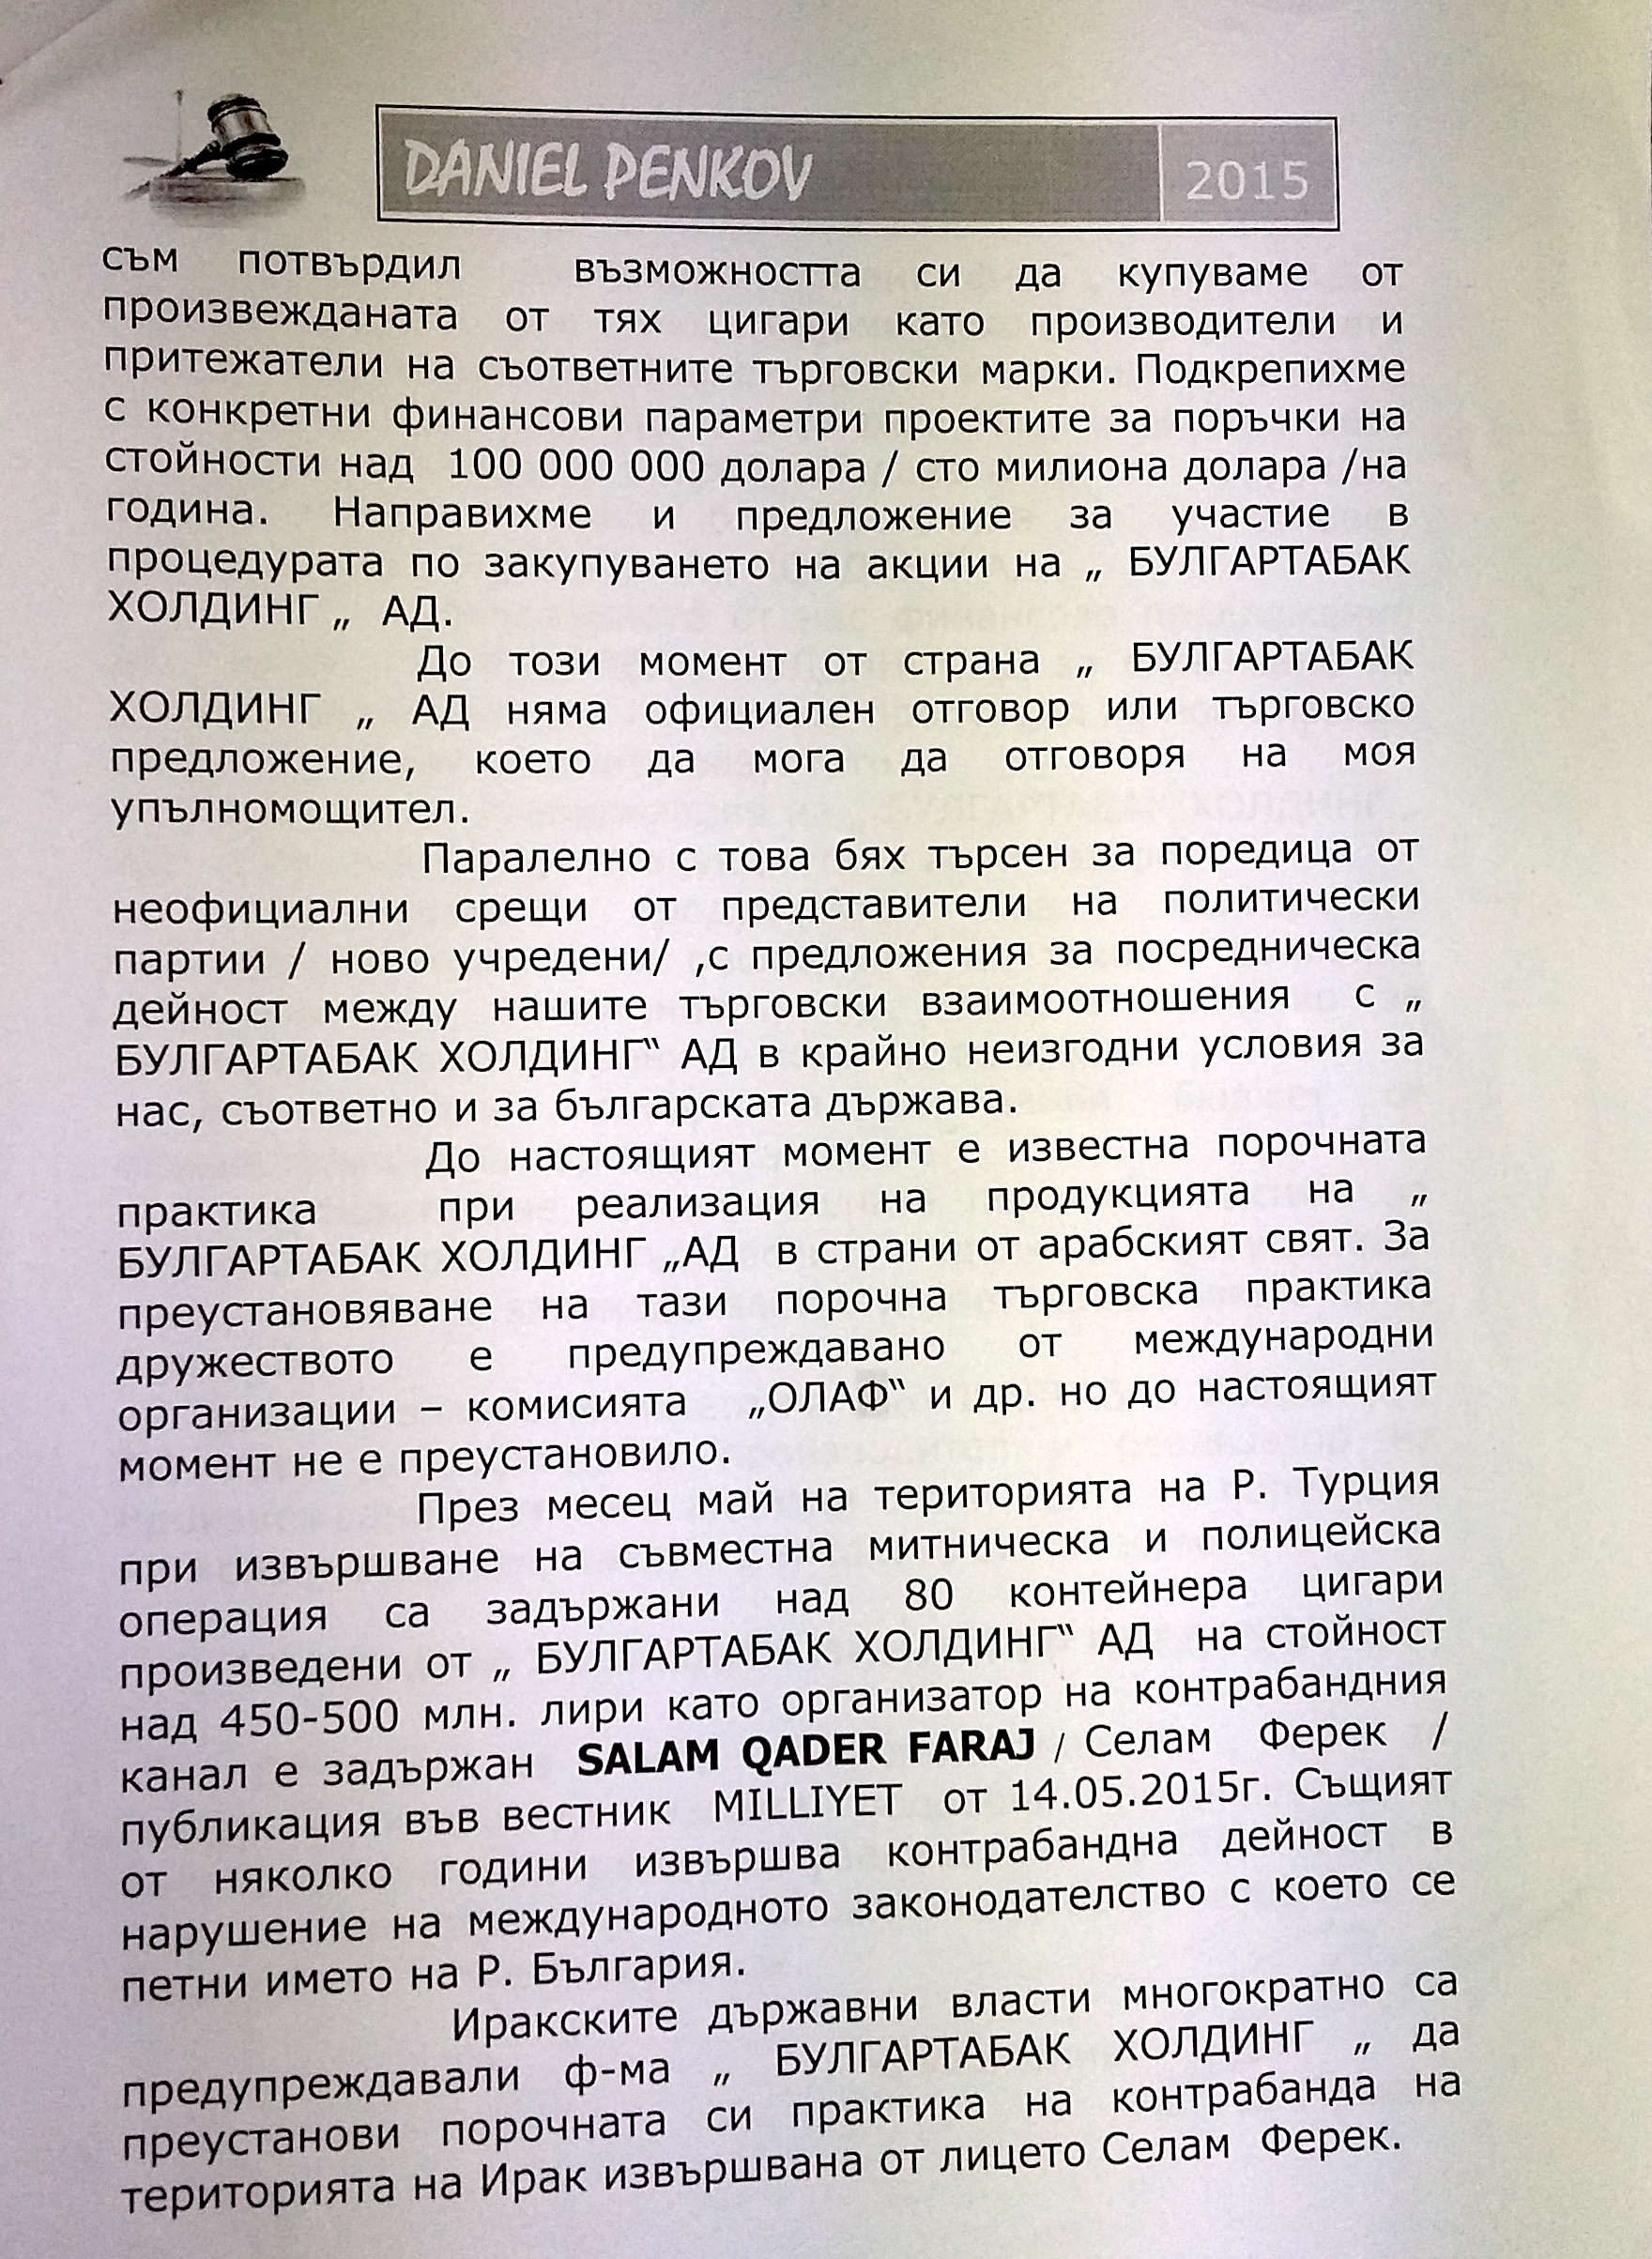 Борисов е бил уведомен и е знаел какво се случва  “Булгартабак” отказала да продава цигари на официални вносители в Азия и Африка